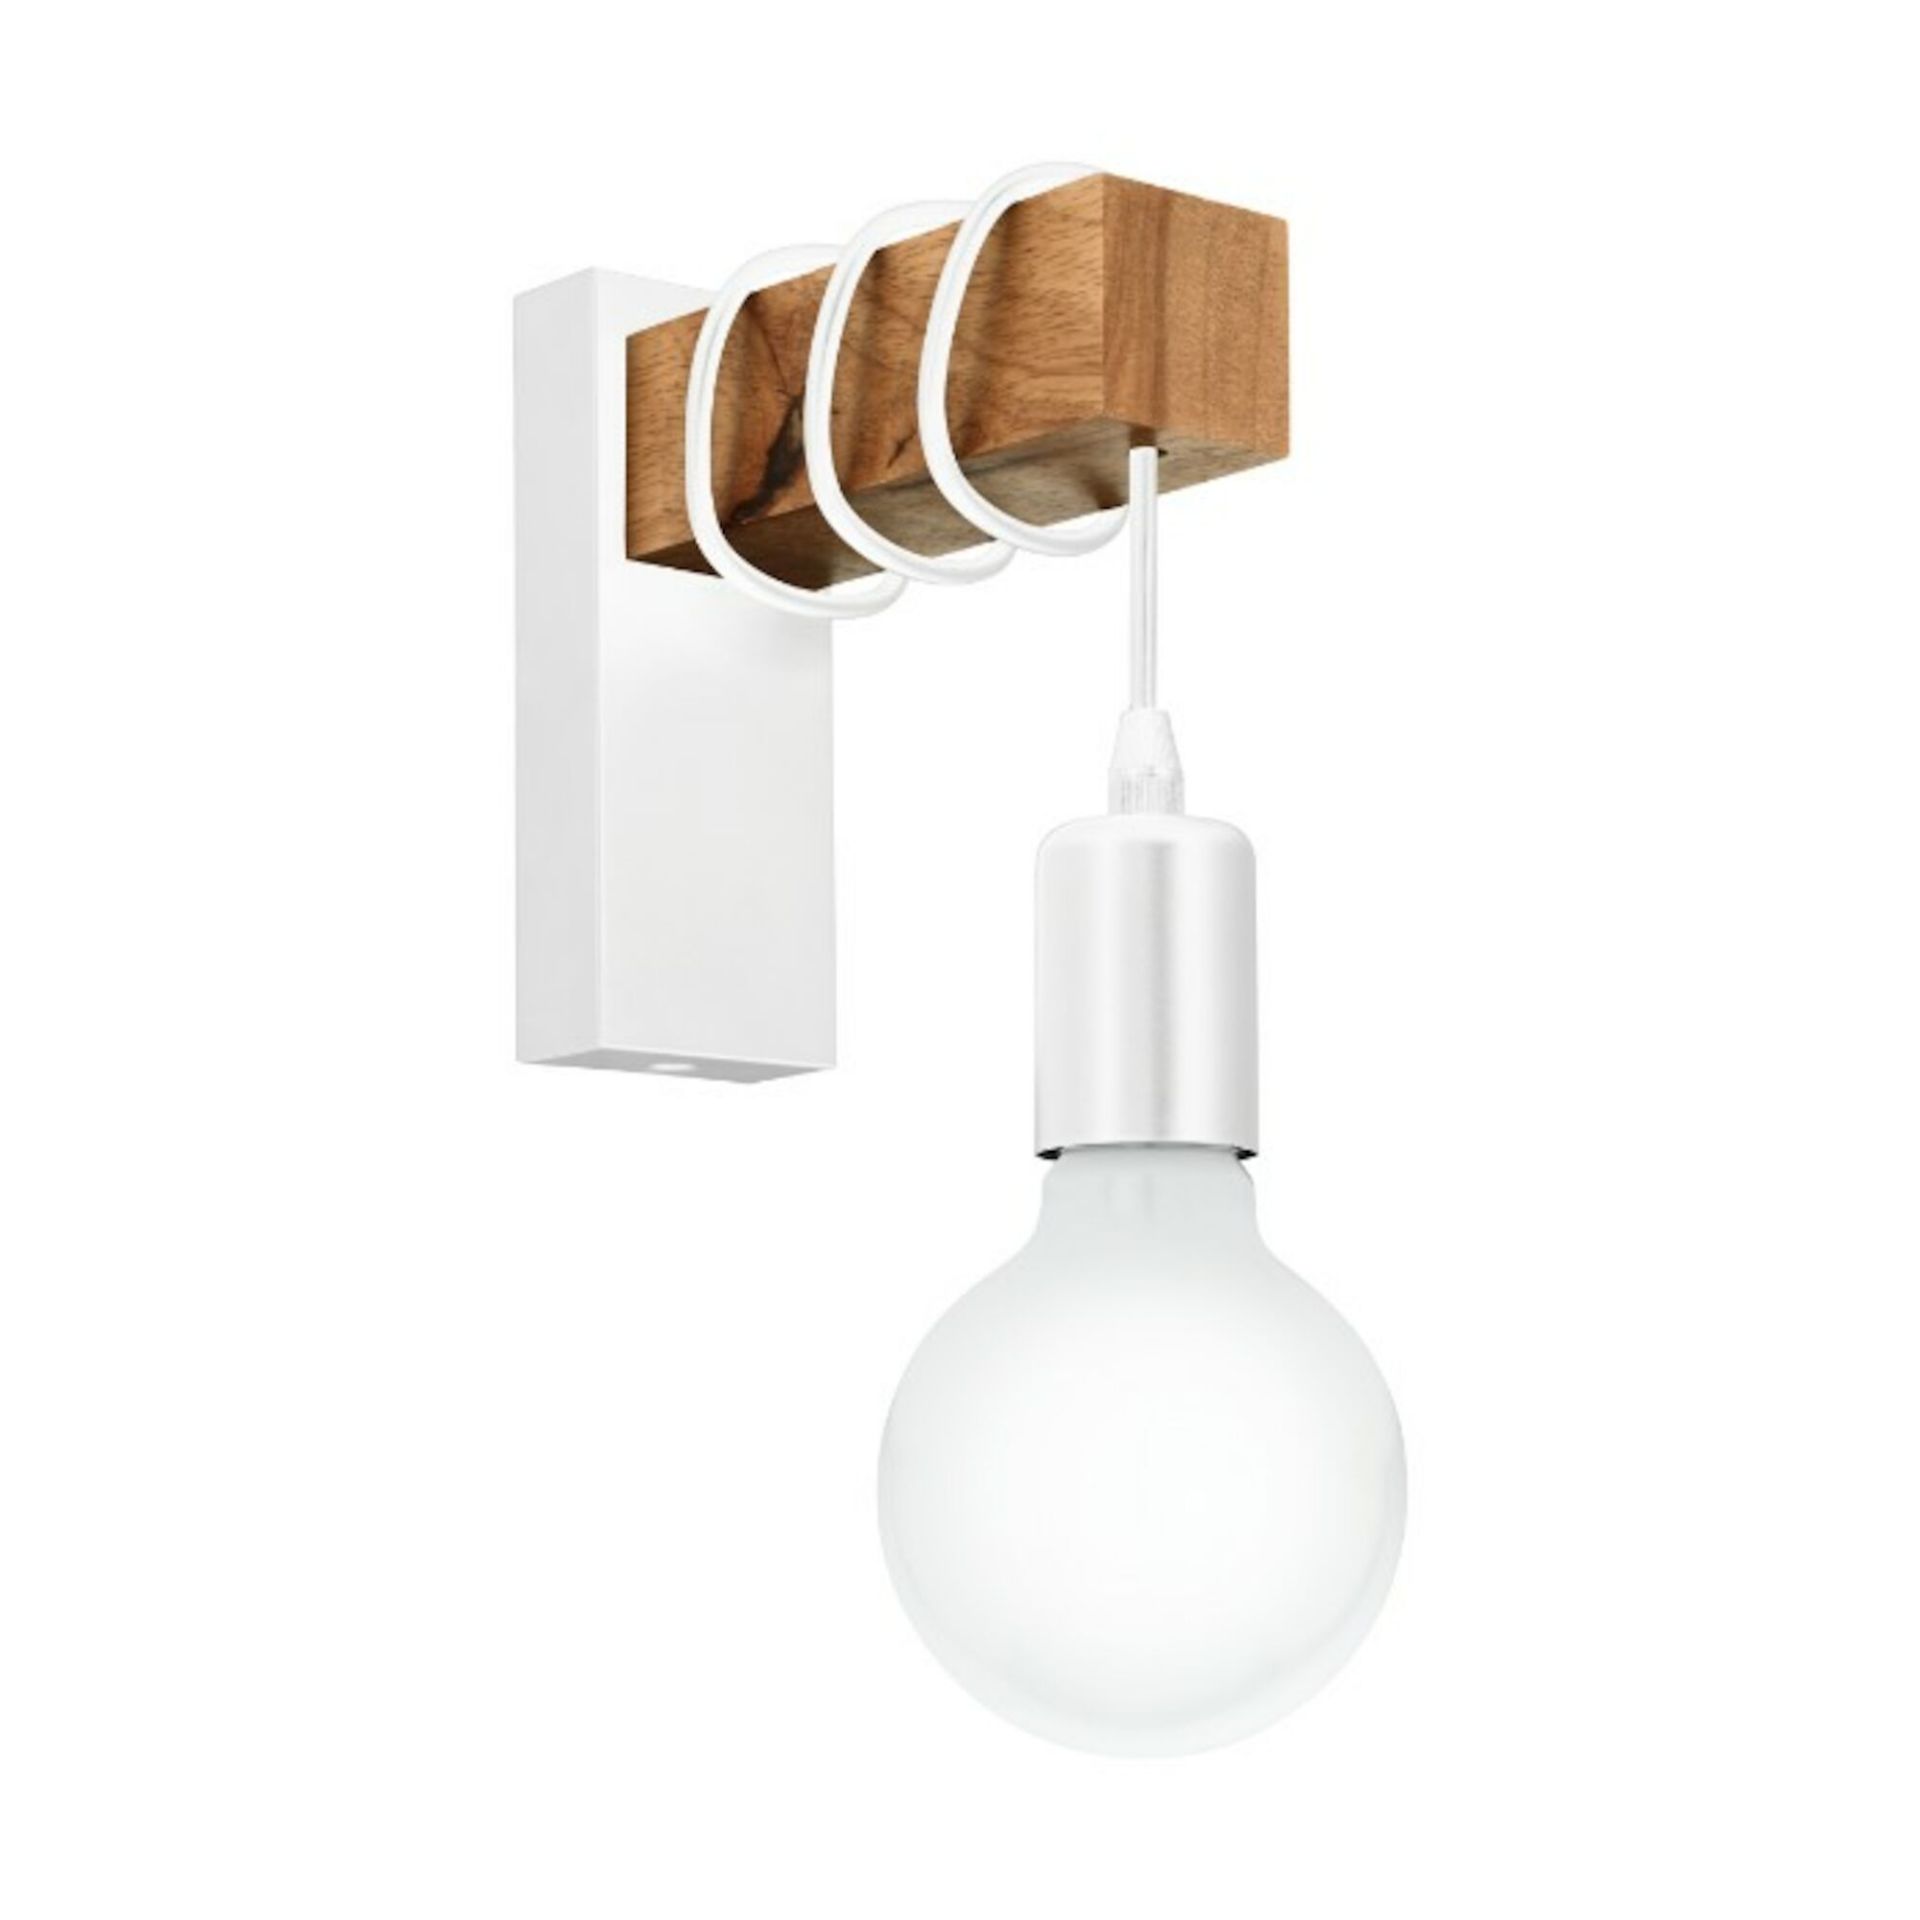 (QT1002) White & Wood 1-Light Wall Hanging Pendant - Citizen Wall light. A modern minimalist ... - Image 3 of 6